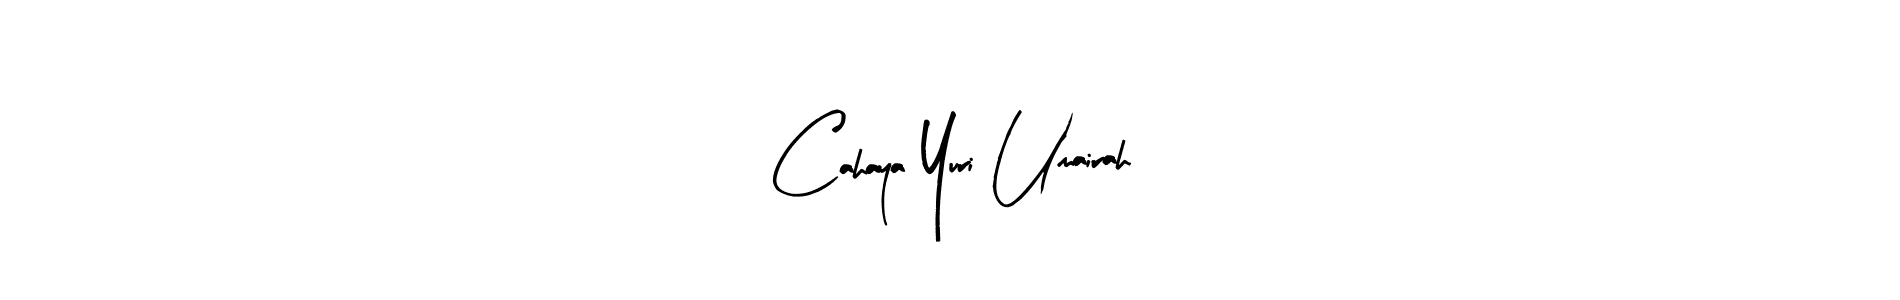 How to Draw Cahaya Yuri Umairah signature style? Arty Signature is a latest design signature styles for name Cahaya Yuri Umairah. Cahaya Yuri Umairah signature style 8 images and pictures png